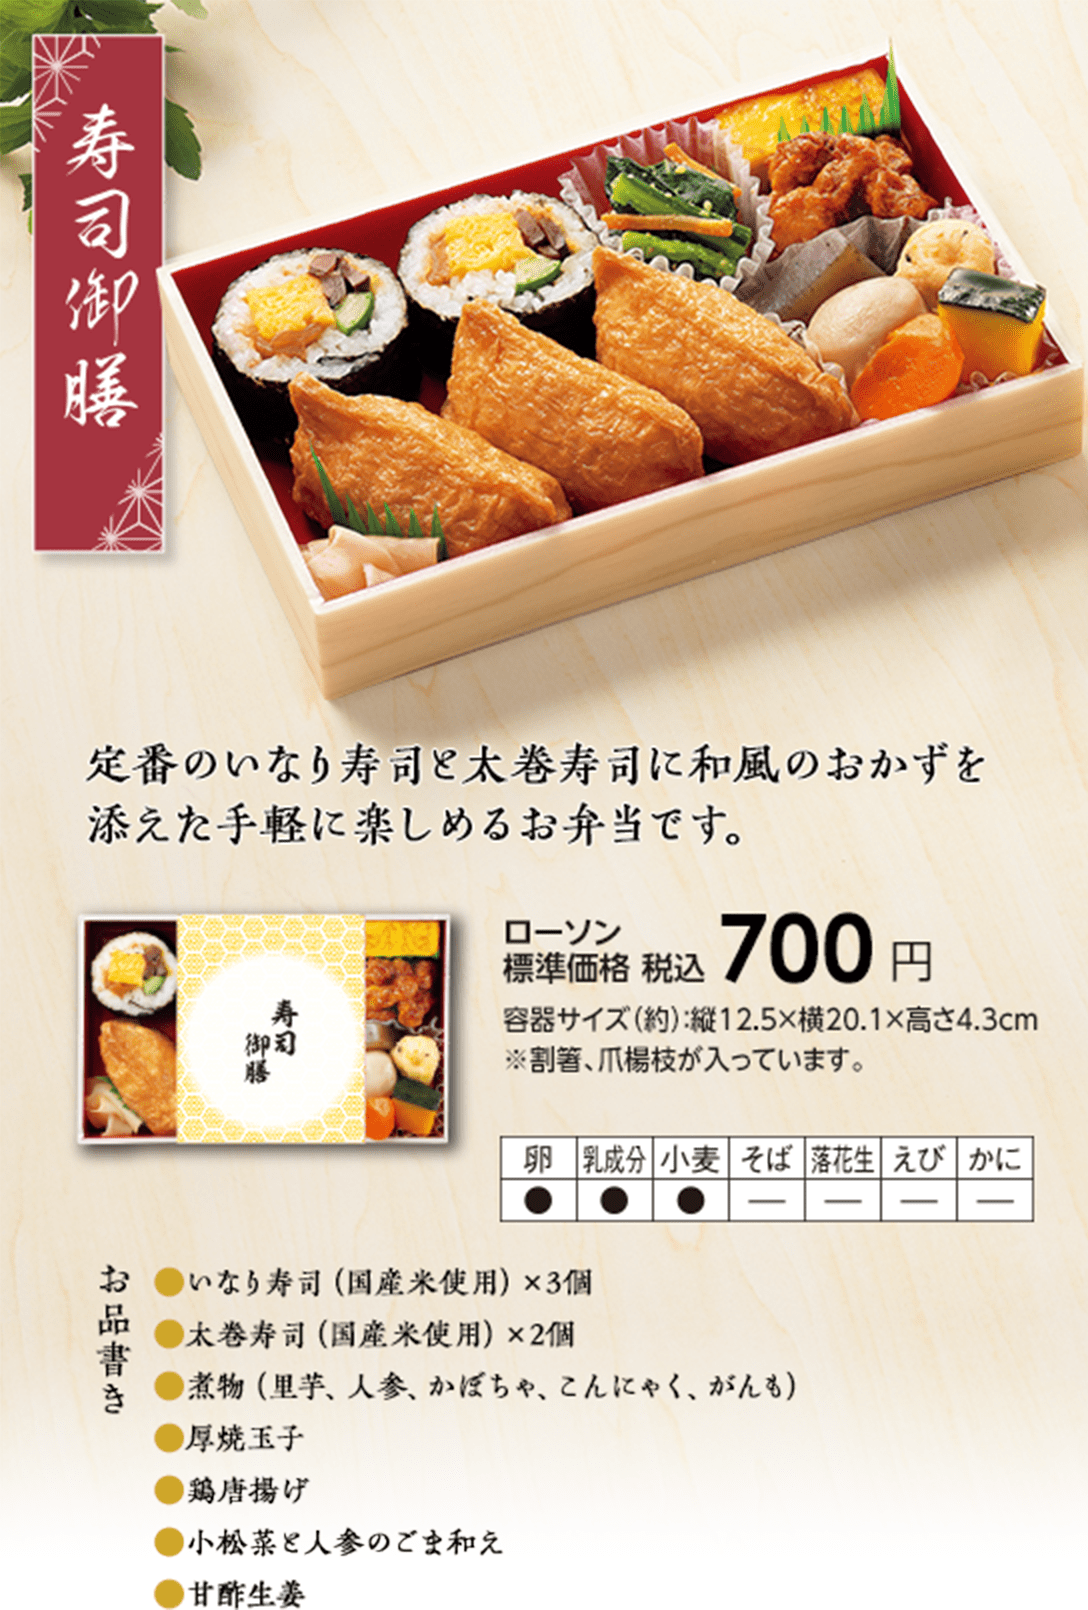 寿司御膳「定番のいなり寿司と太巻寿司に和風のおかずを添えた手軽に楽しめるお弁当です。」ローソン標準価格 税込700円